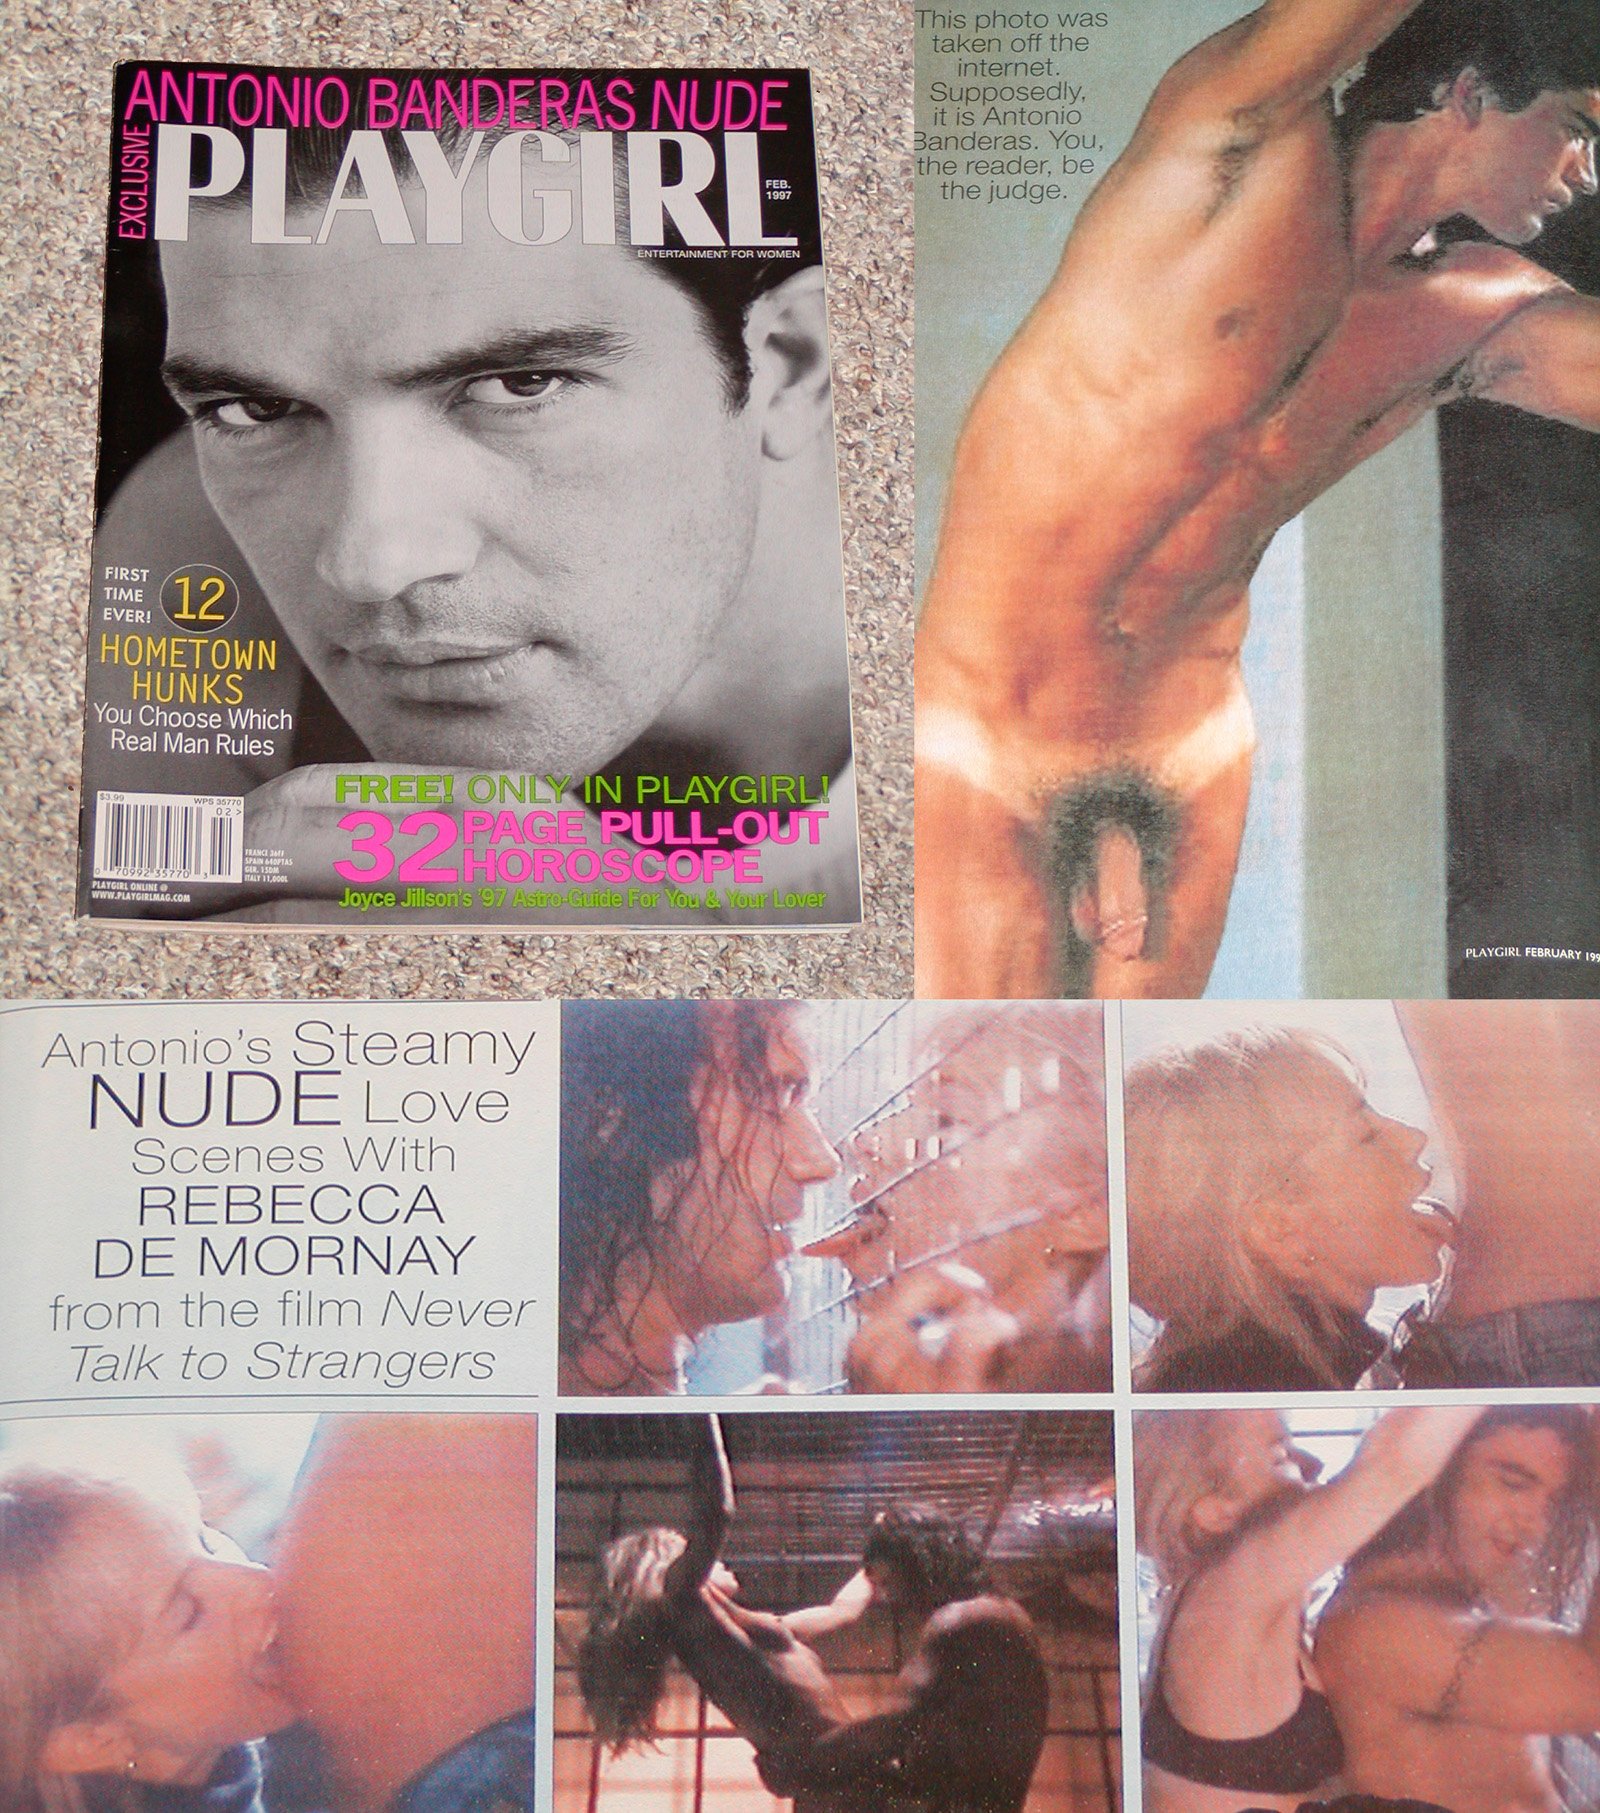 Antonio Banderas: World’s Hottest Latino Stud